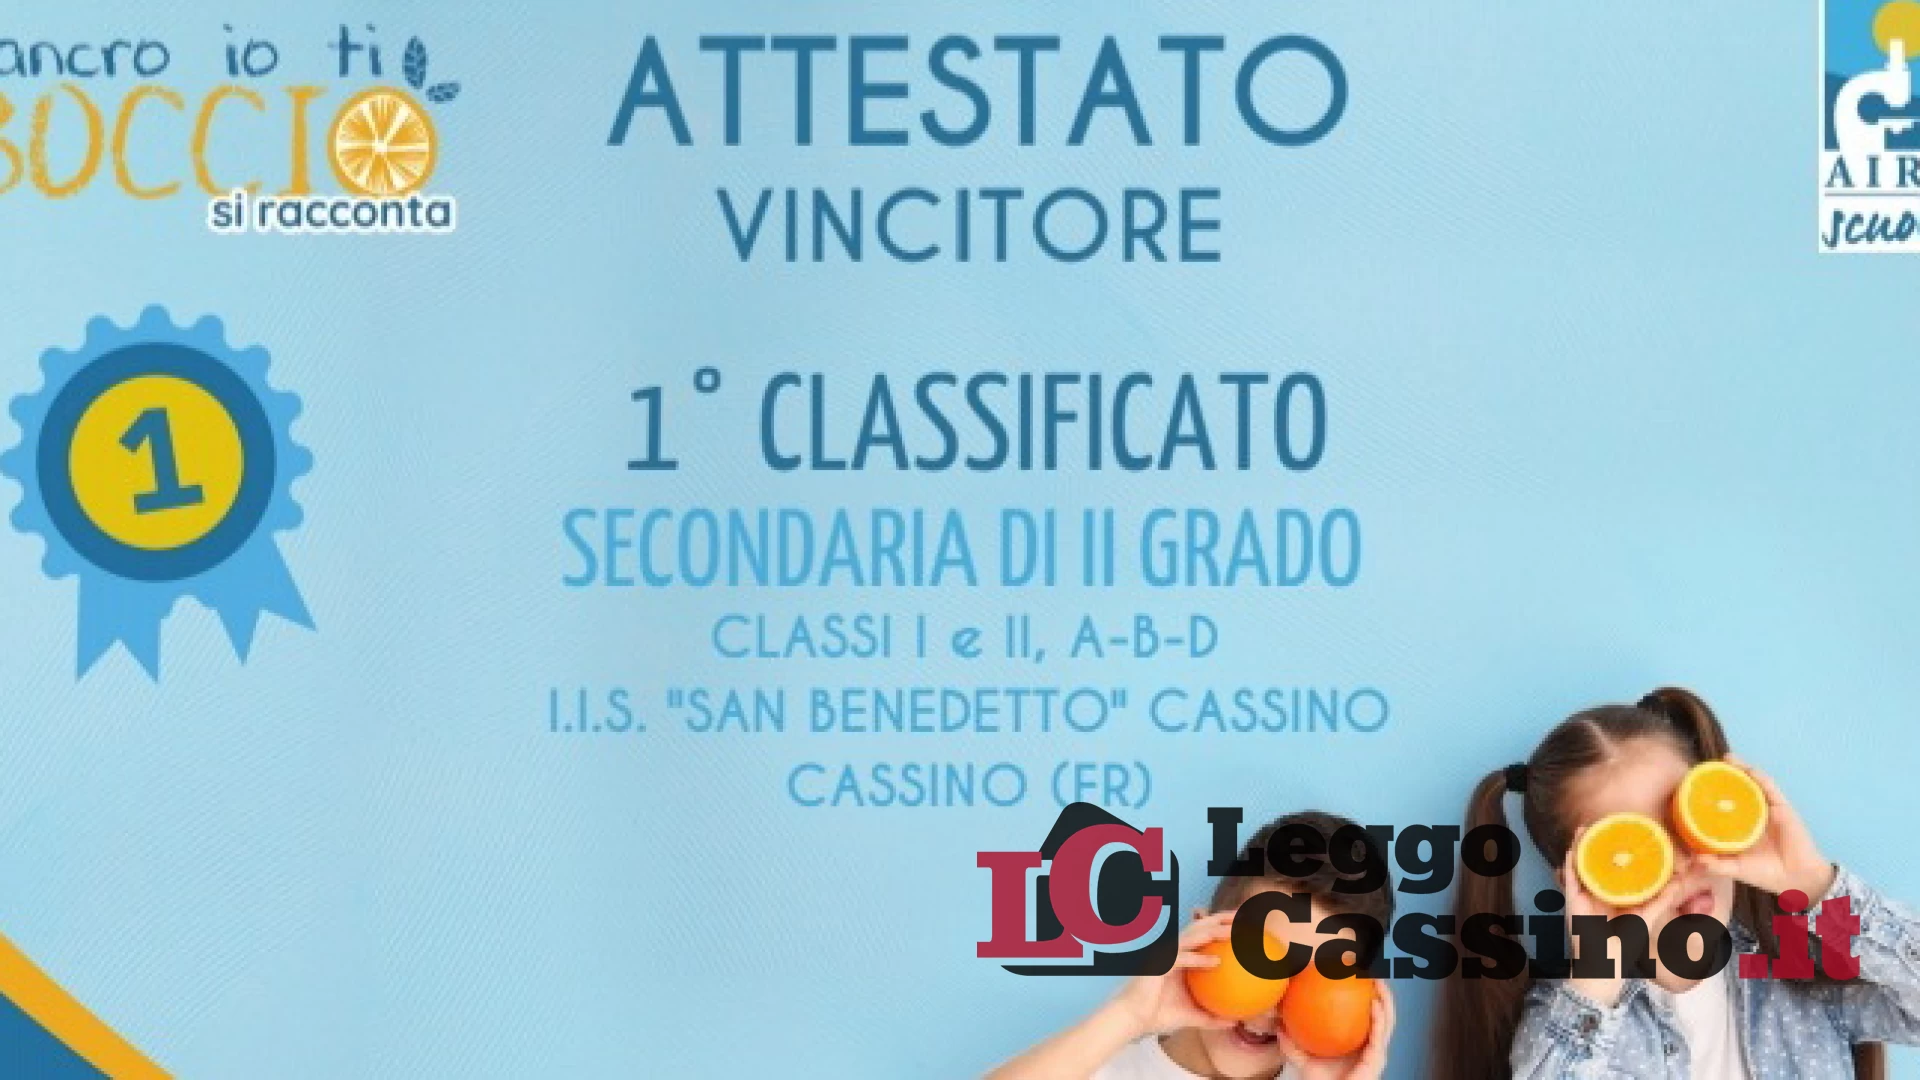 L'I.I.S. San Benedetto di Cassino 1° classificato al concorso "Cancro io ti boccio..si racconta"